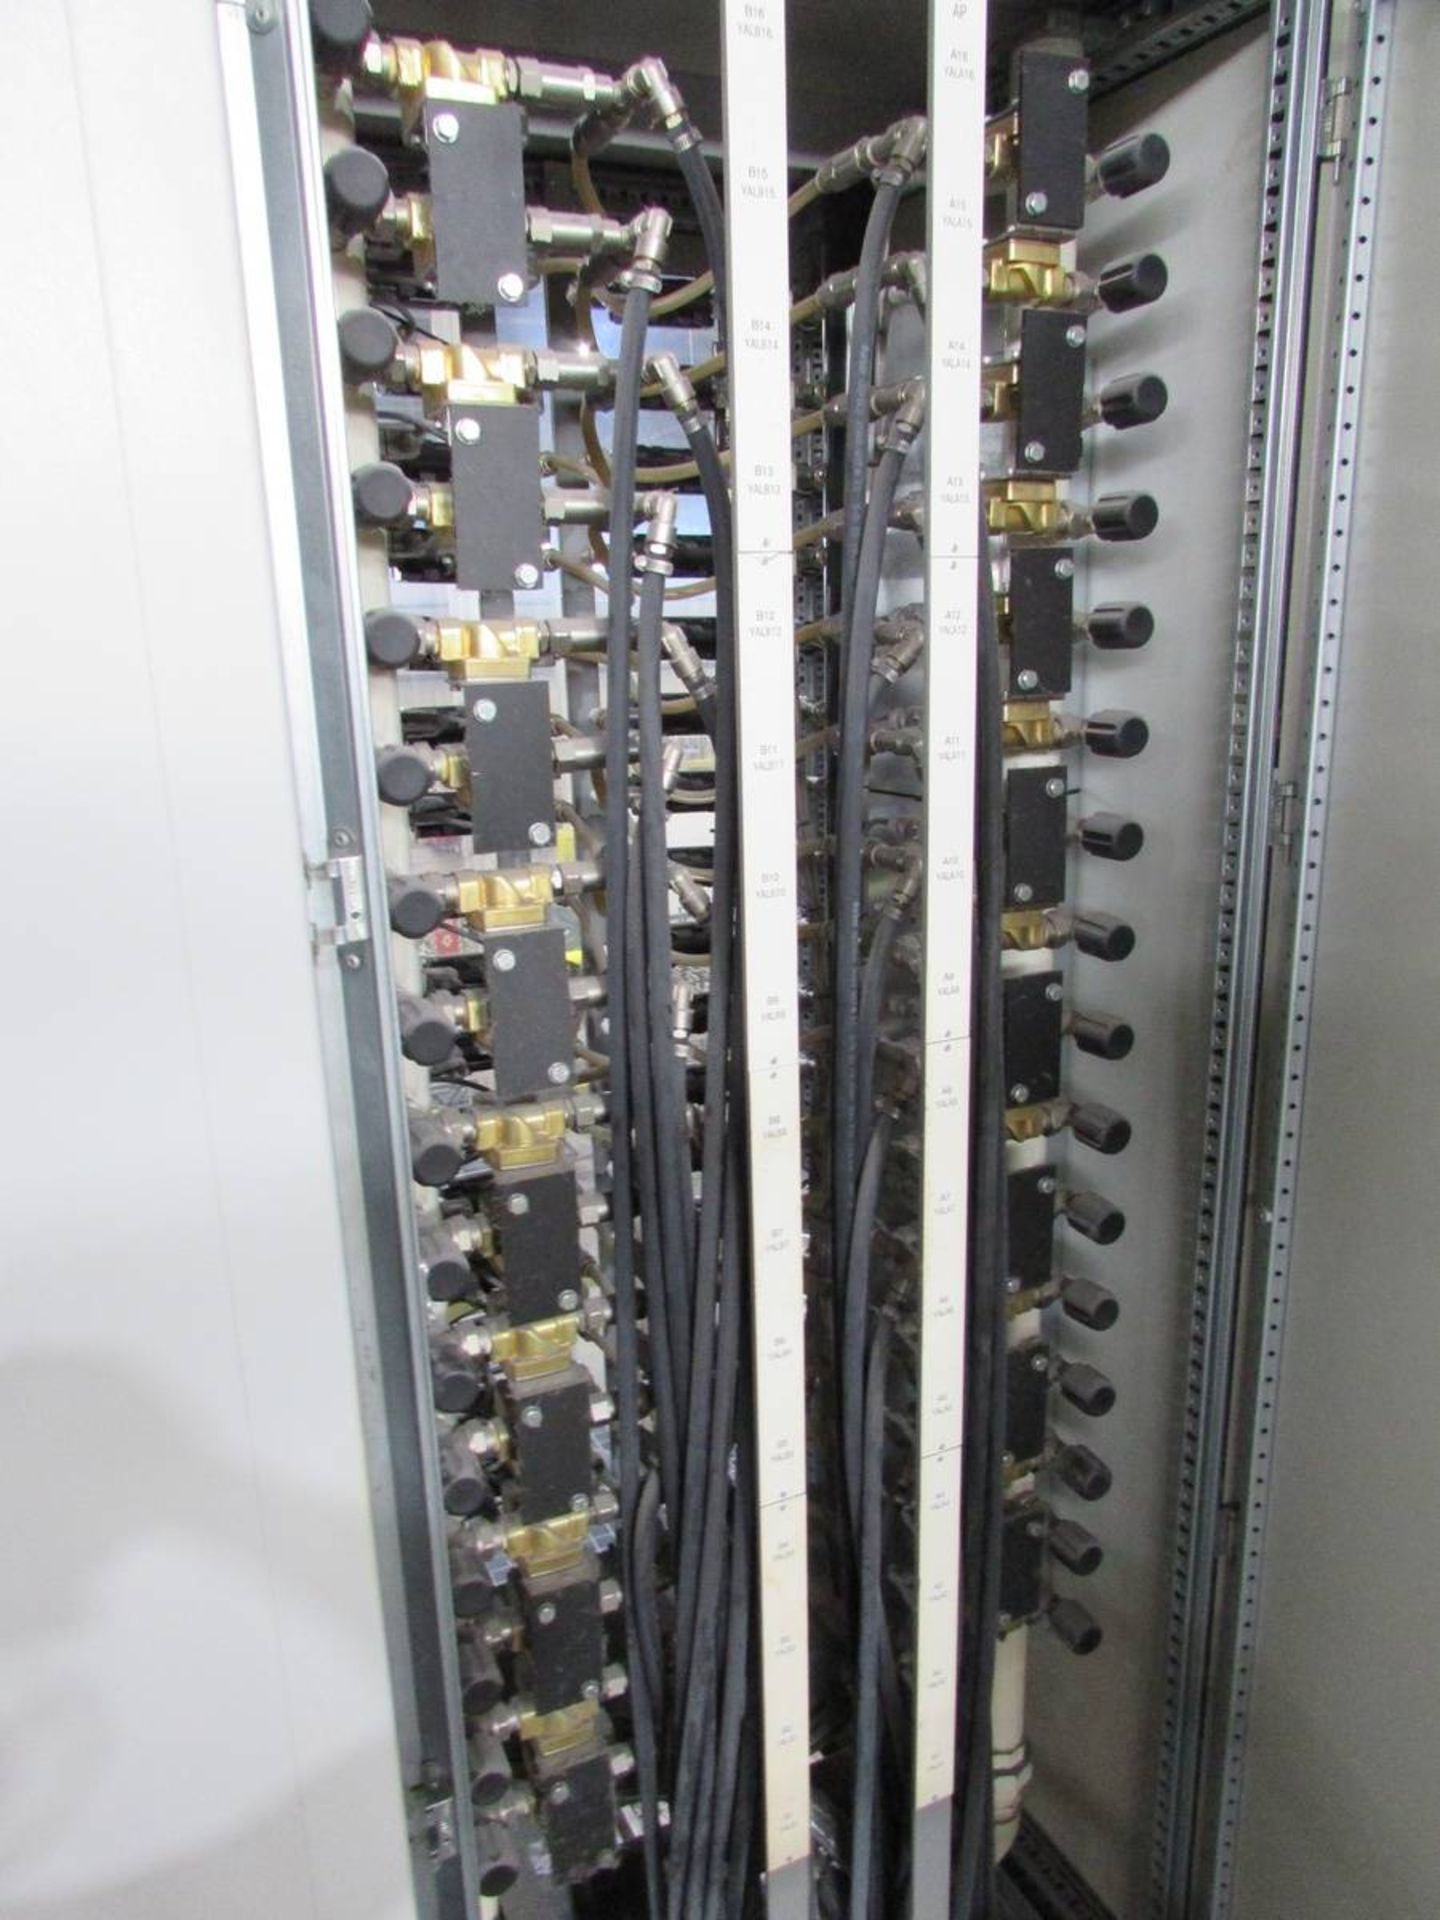 2018 Ilinden CPC 1600 C96 Counter Pressure Casting Machine - Image 19 of 24